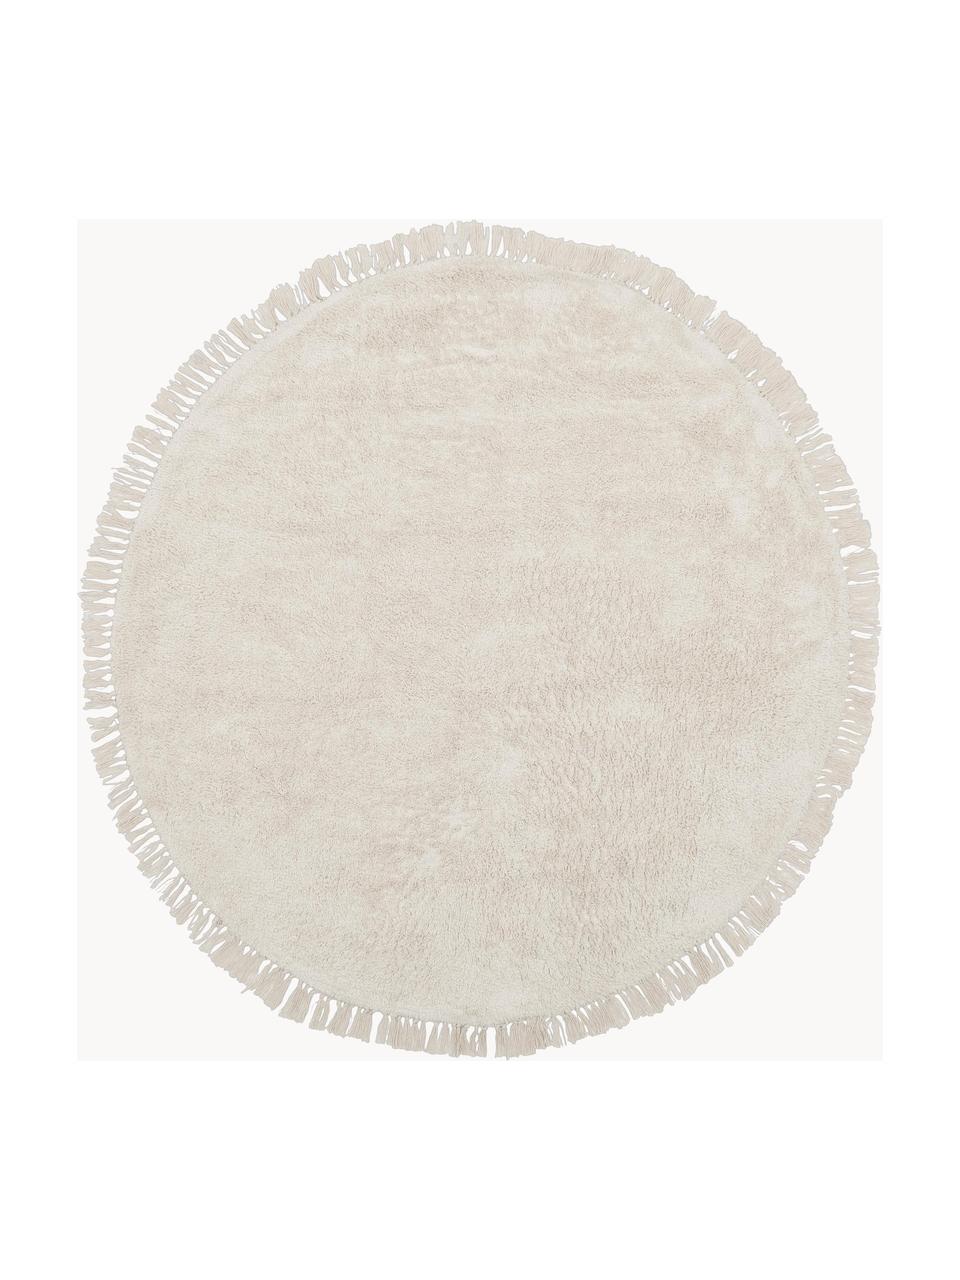 Tappeto rotondo in cotone fatto a mano con frange Daya, Retro: lattice, Bianco crema, Ø 120 cm (taglia S)